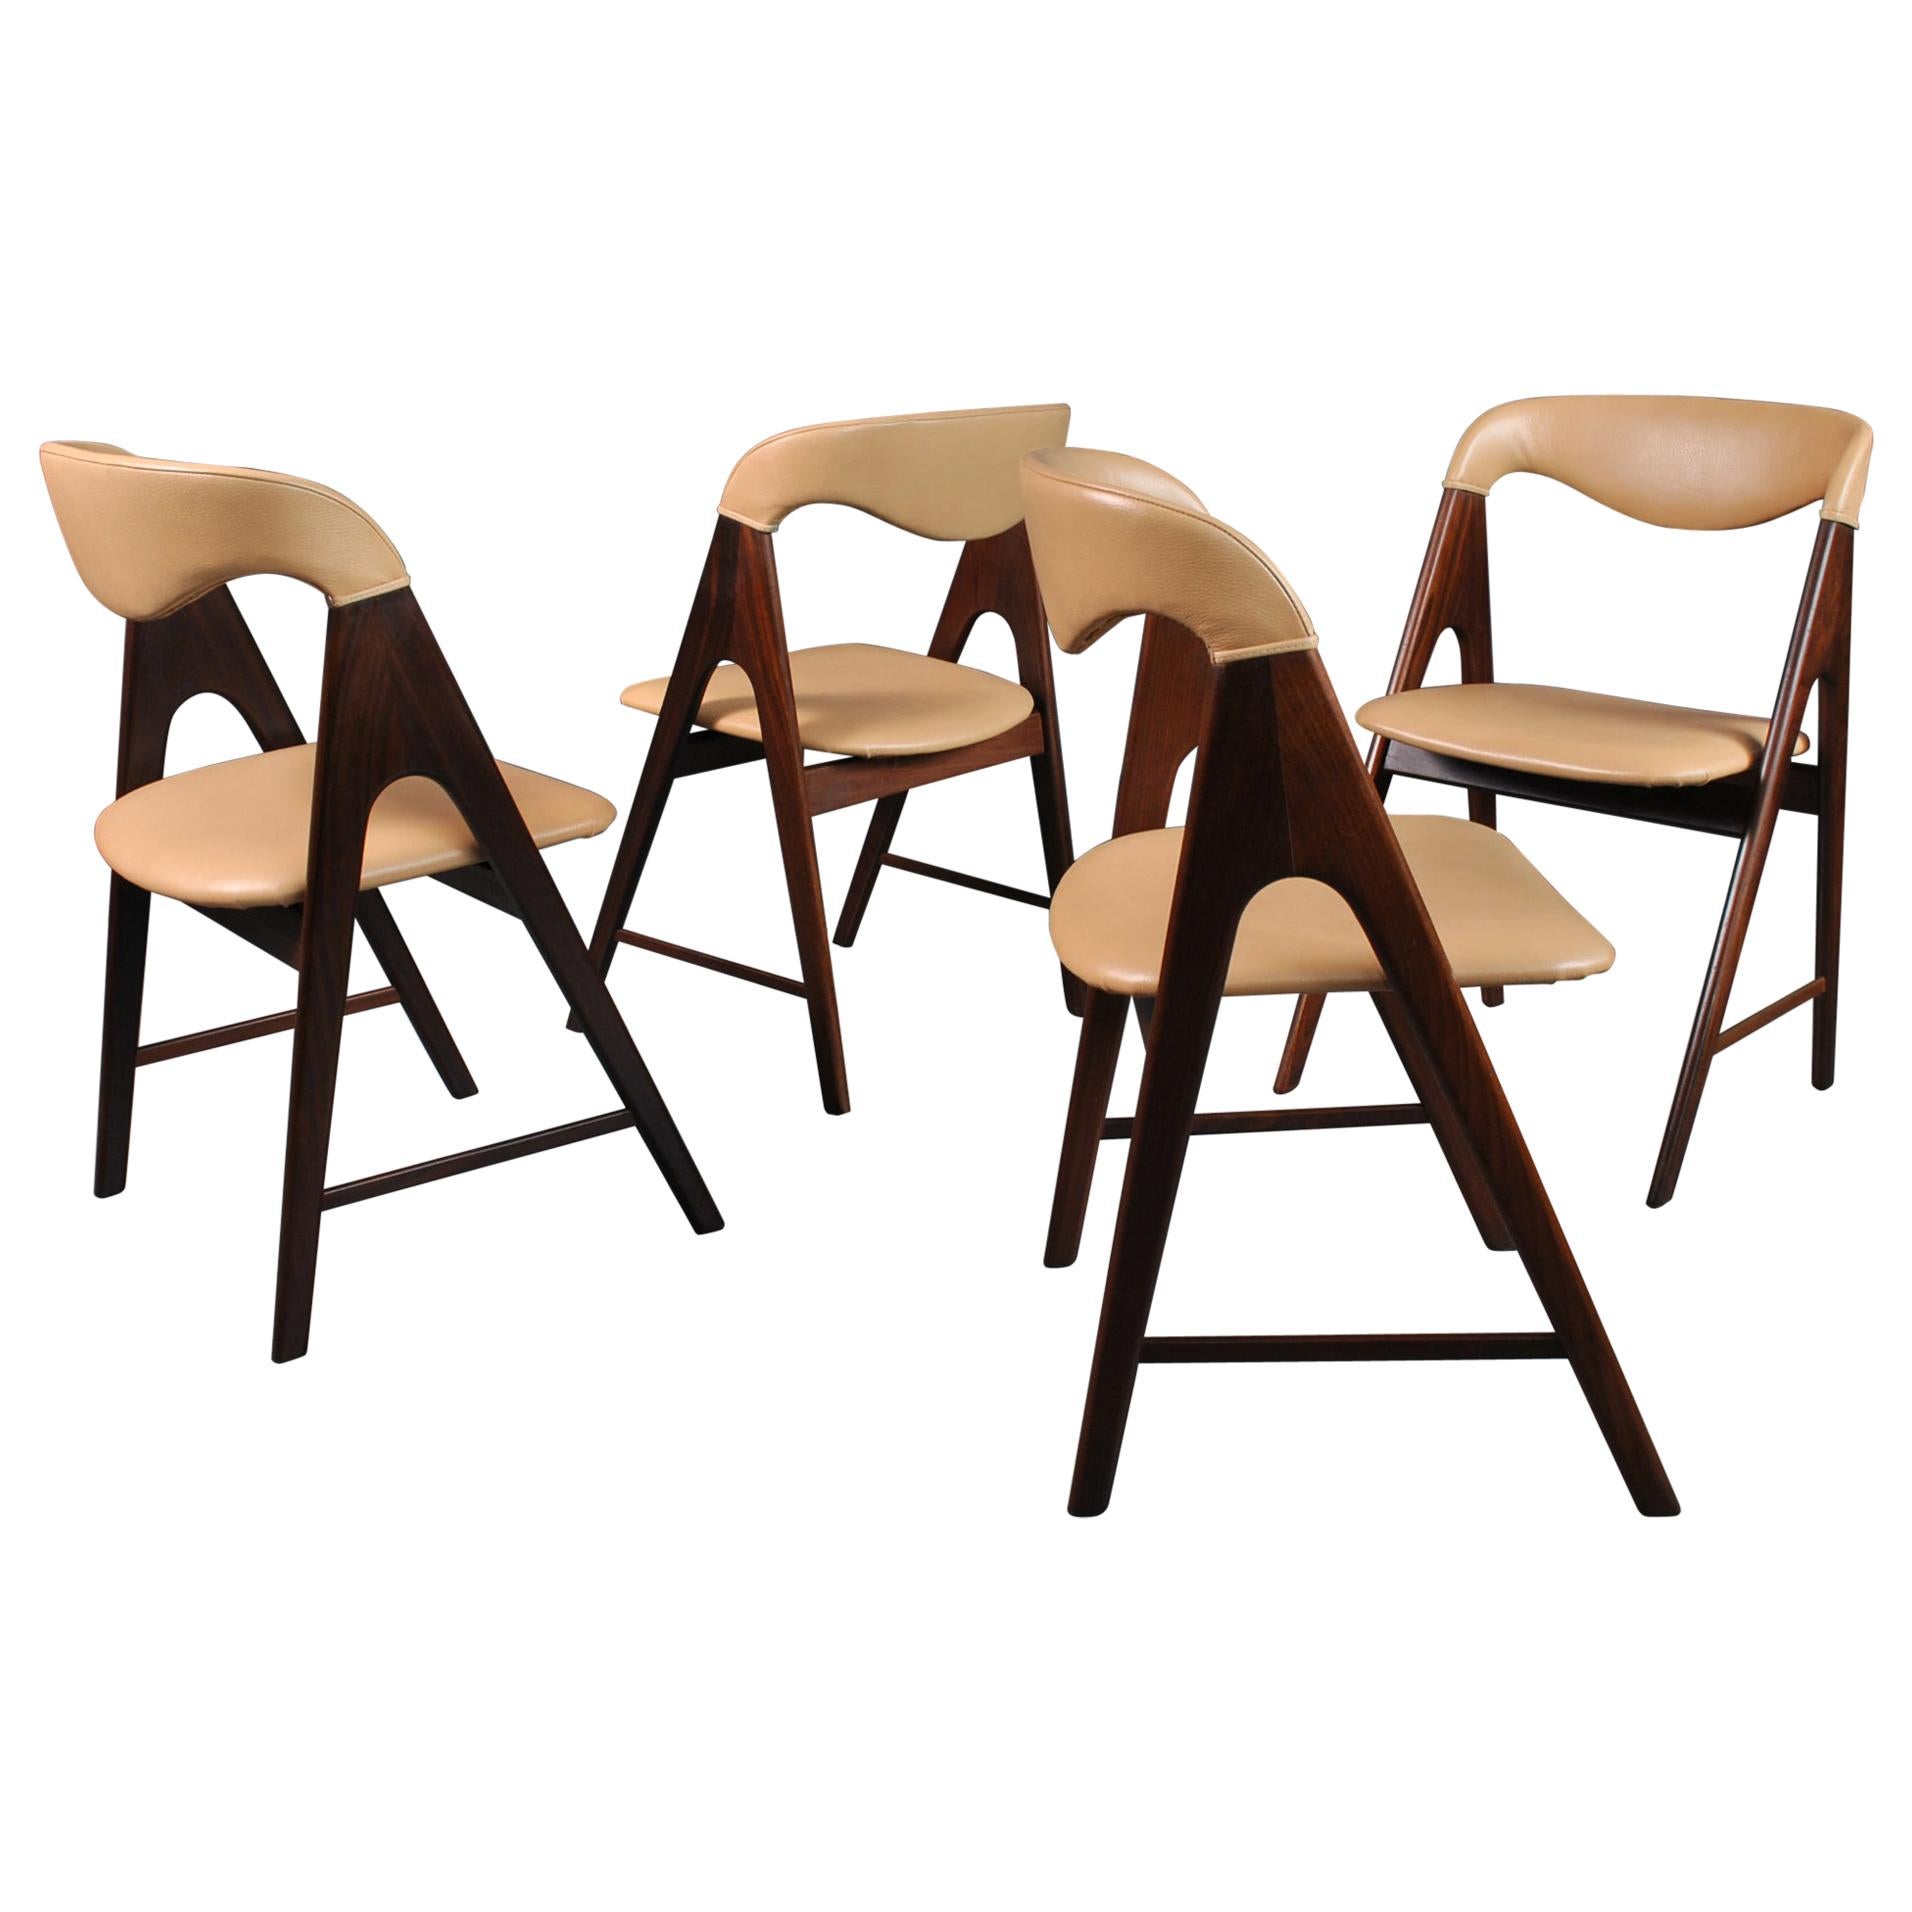 Danish Midcentury Teak Dining Chairs